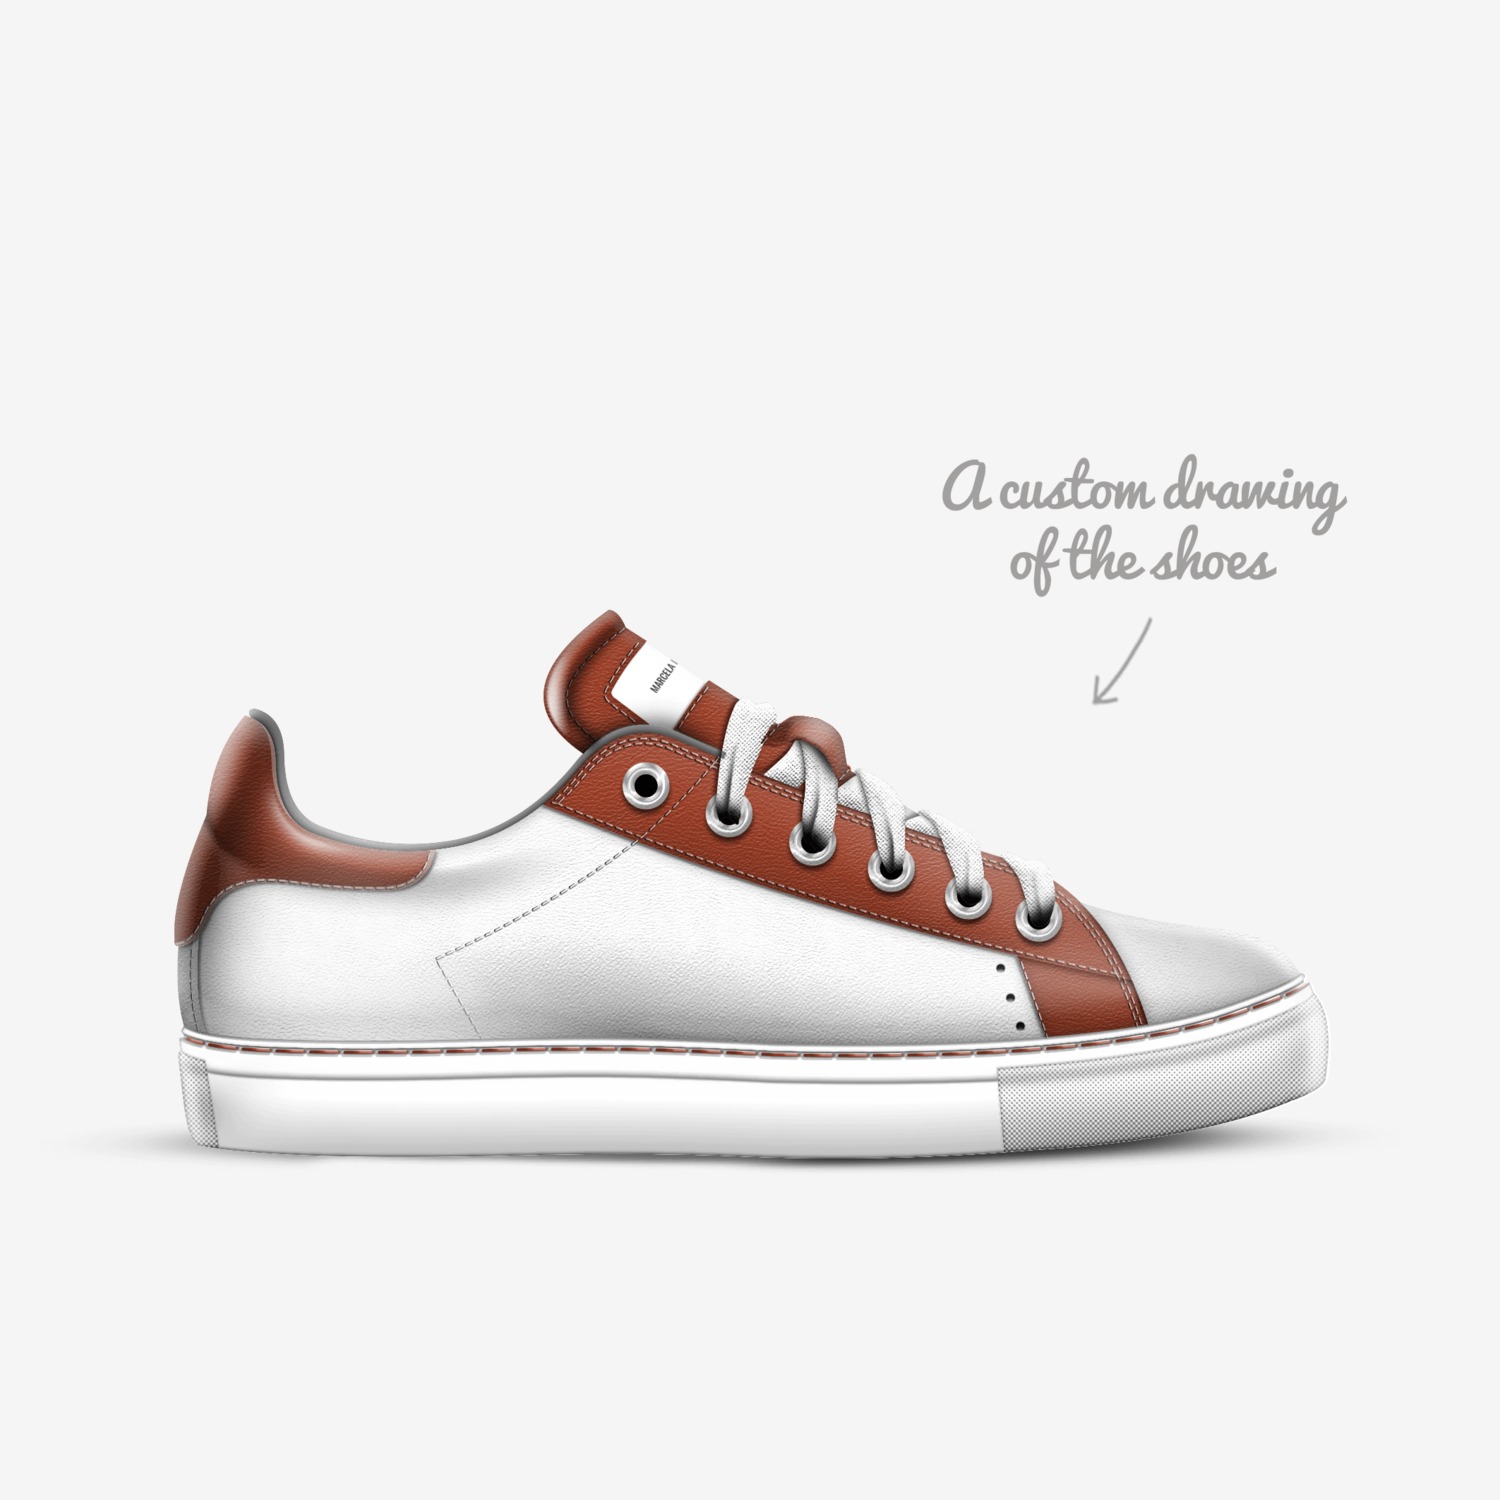 Marcela Fontanezi | A Custom Shoe concept by Marcela Fontanezi